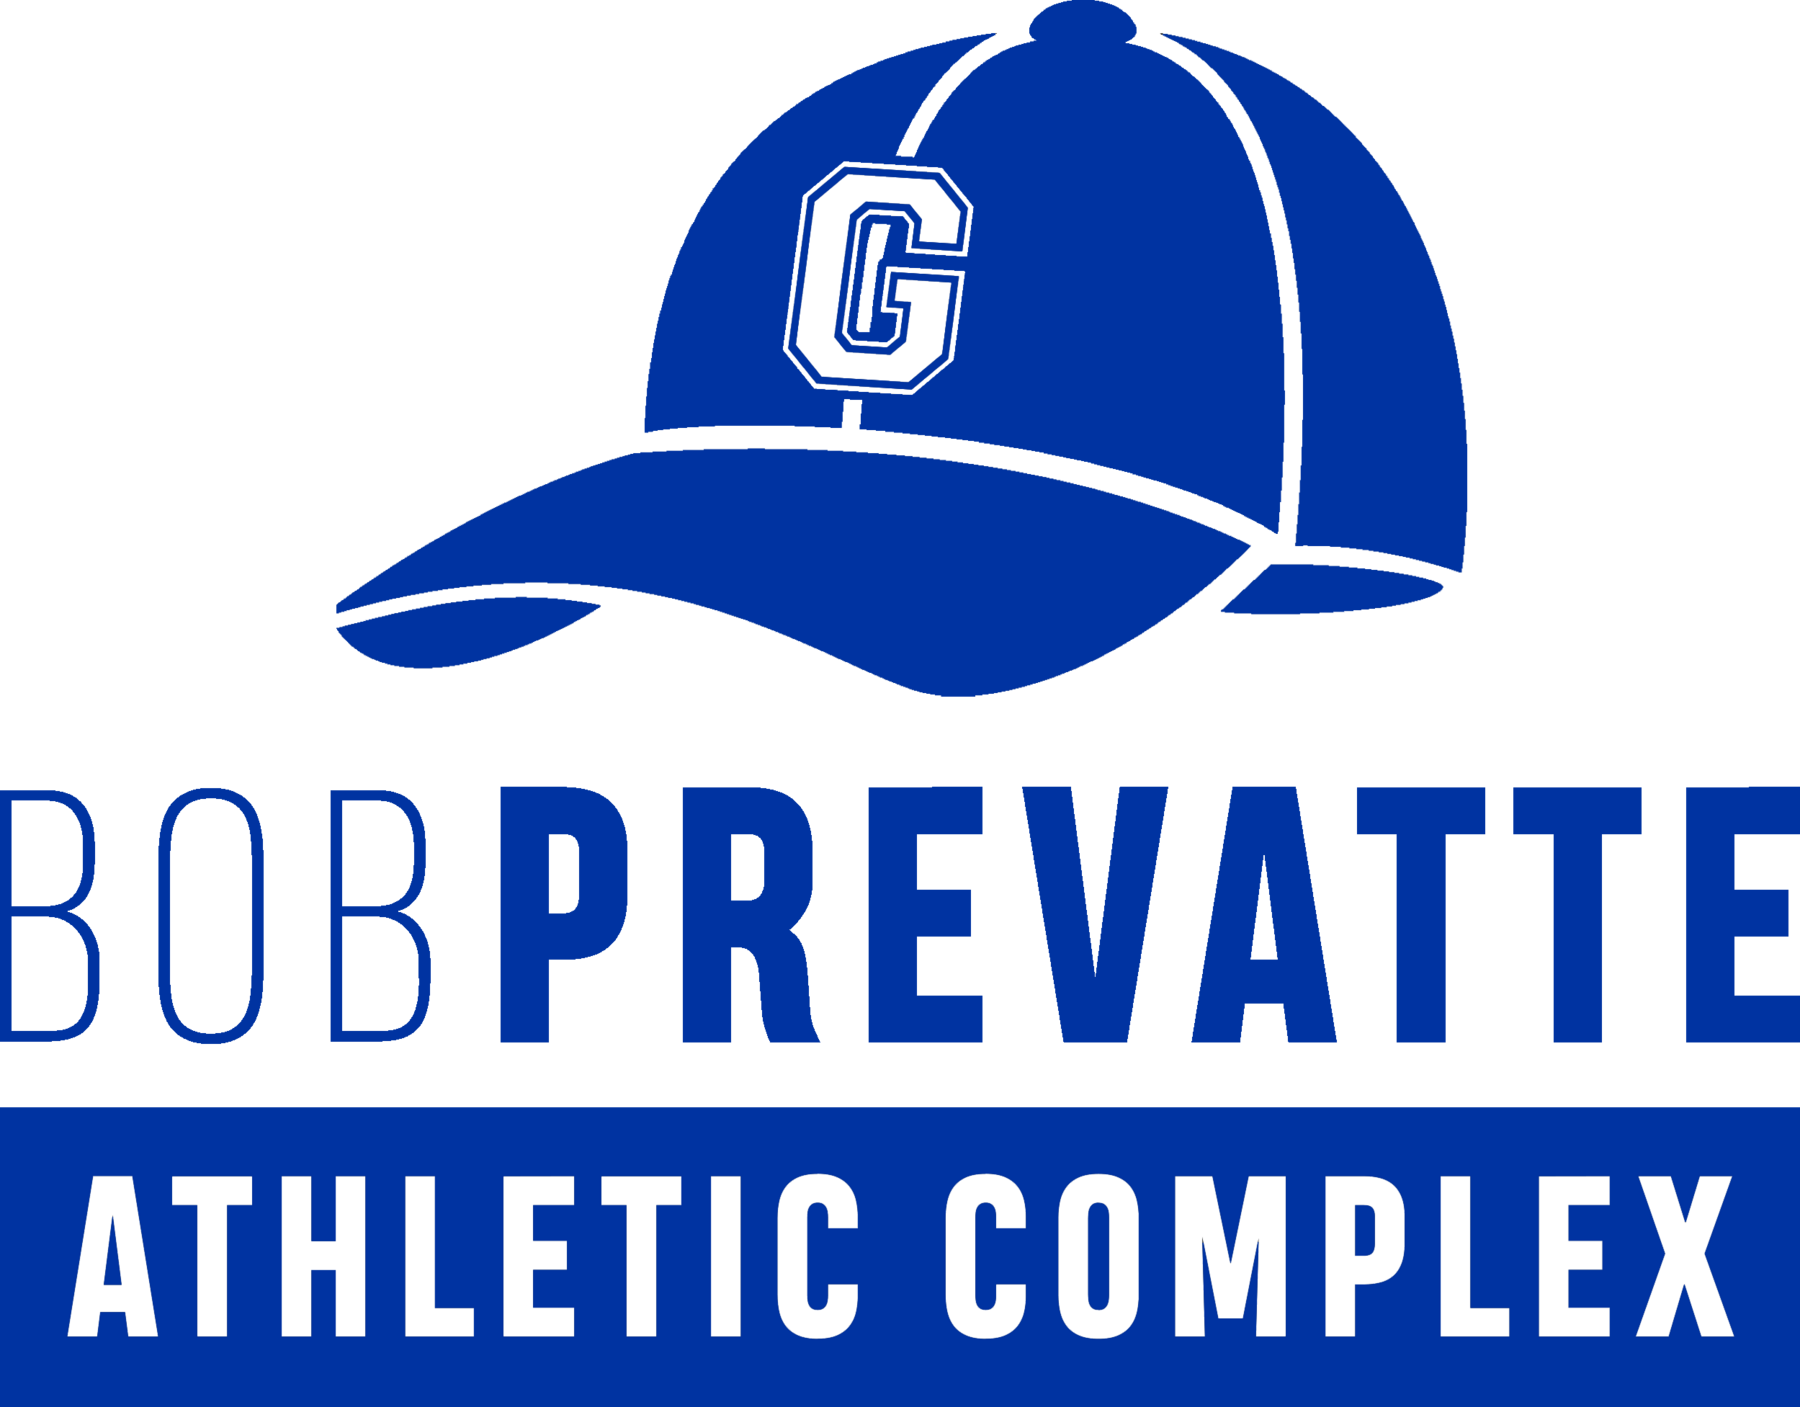 Bob Prevatte Athletic Complex logo